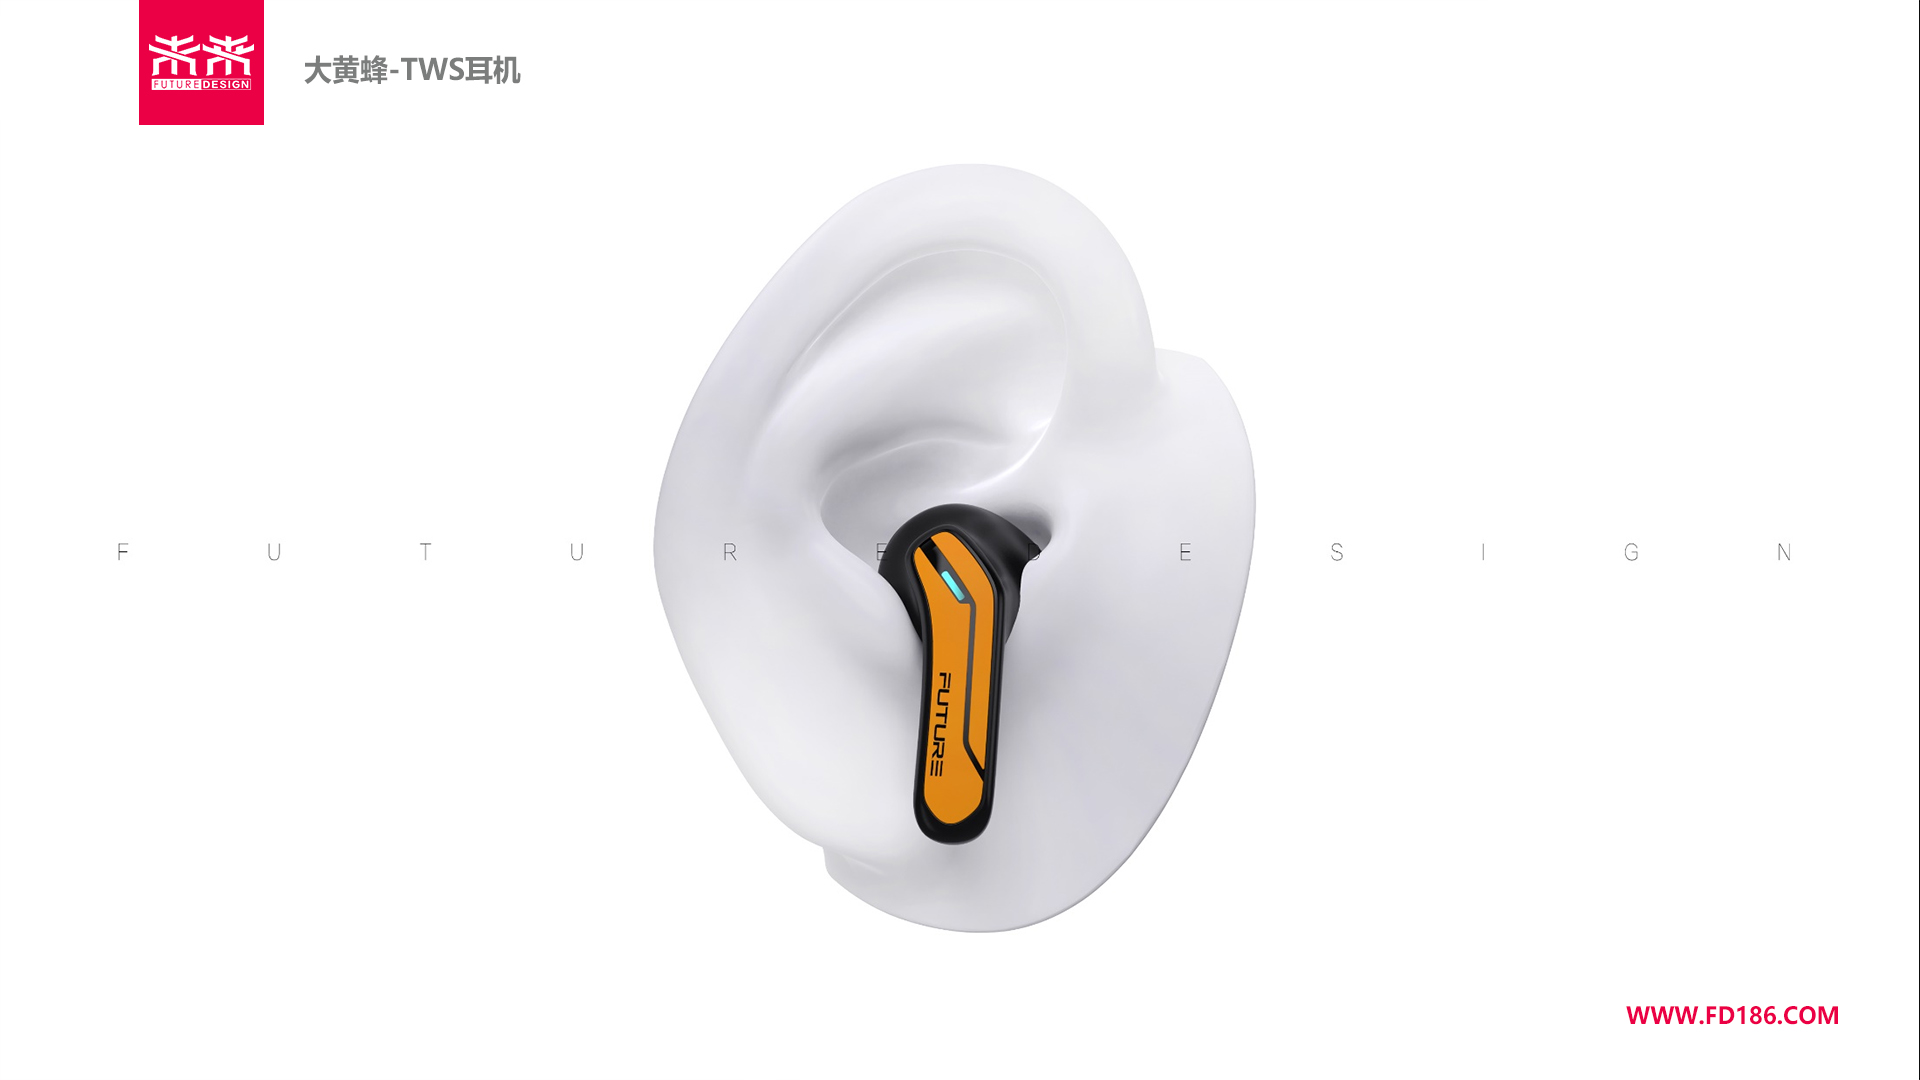 TWS耳机设计-TWS游戏耳机